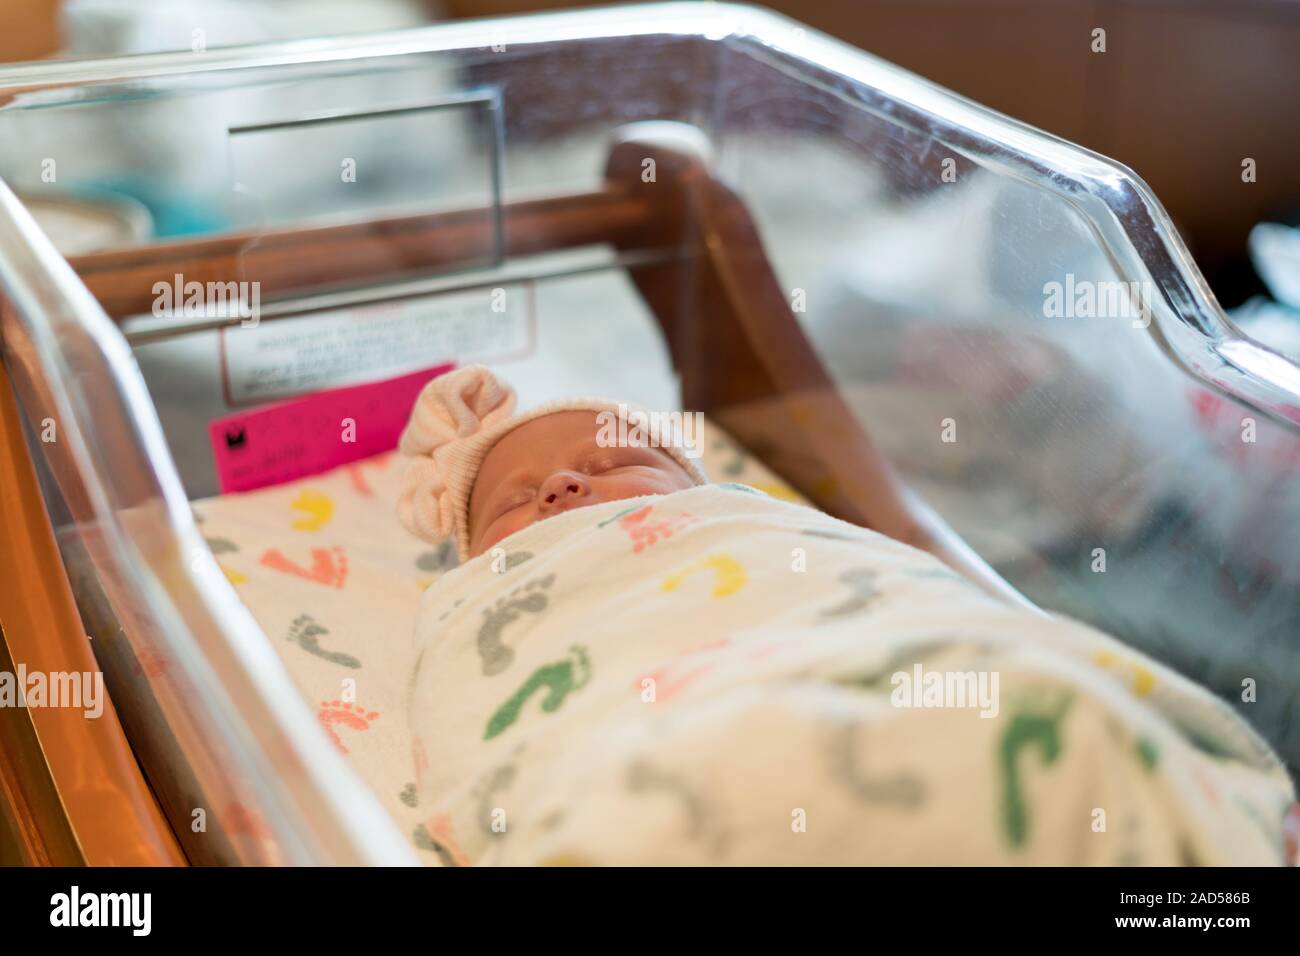 Bébé nouveau-né à l'hôpital de dormir dans la couchette Banque D'Images